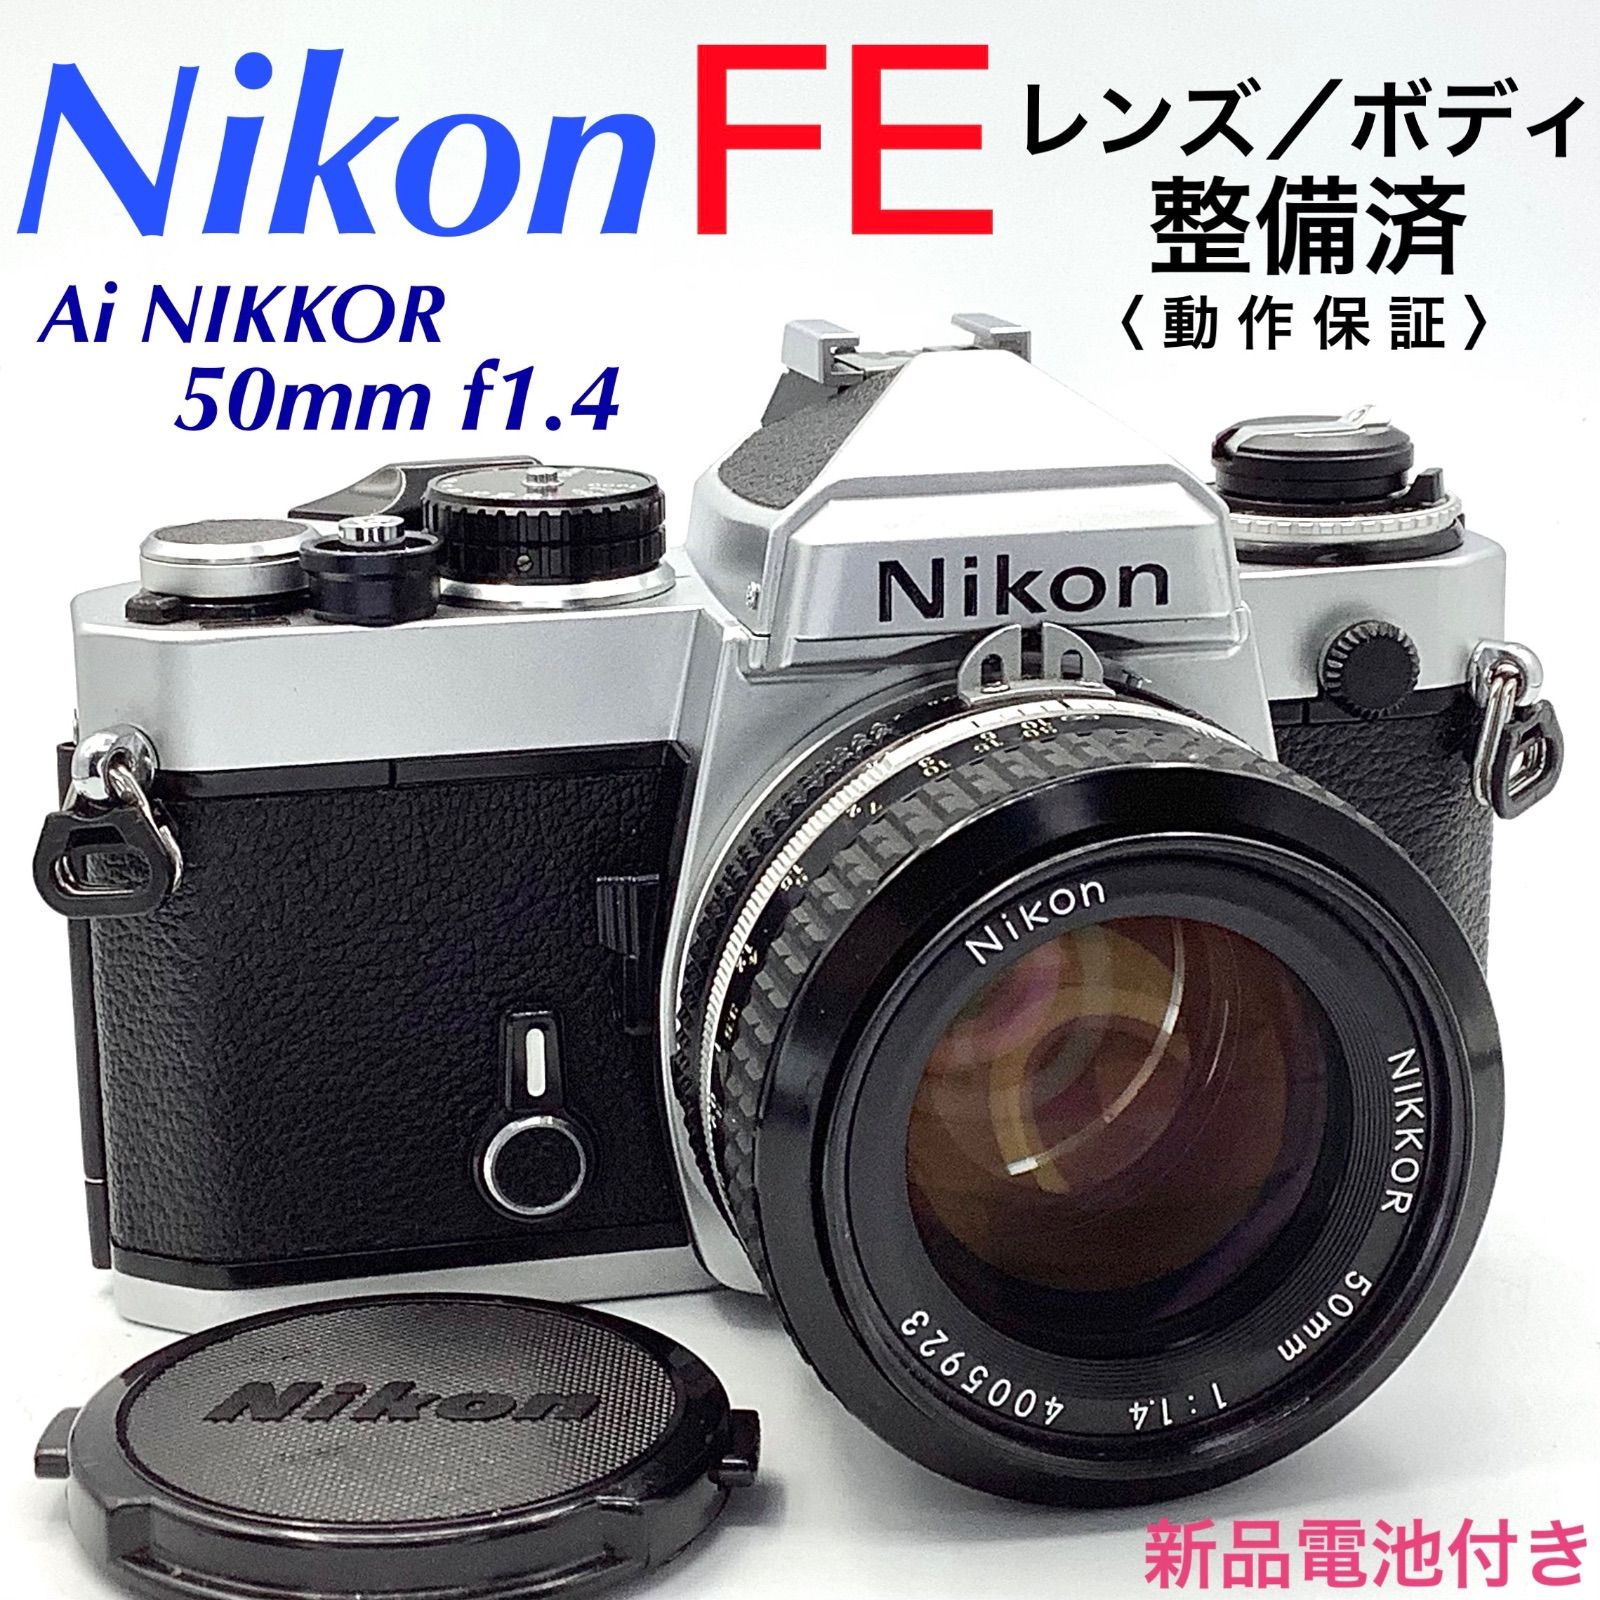 ☆点検済み☆ニコン Nikon FE レンズ付